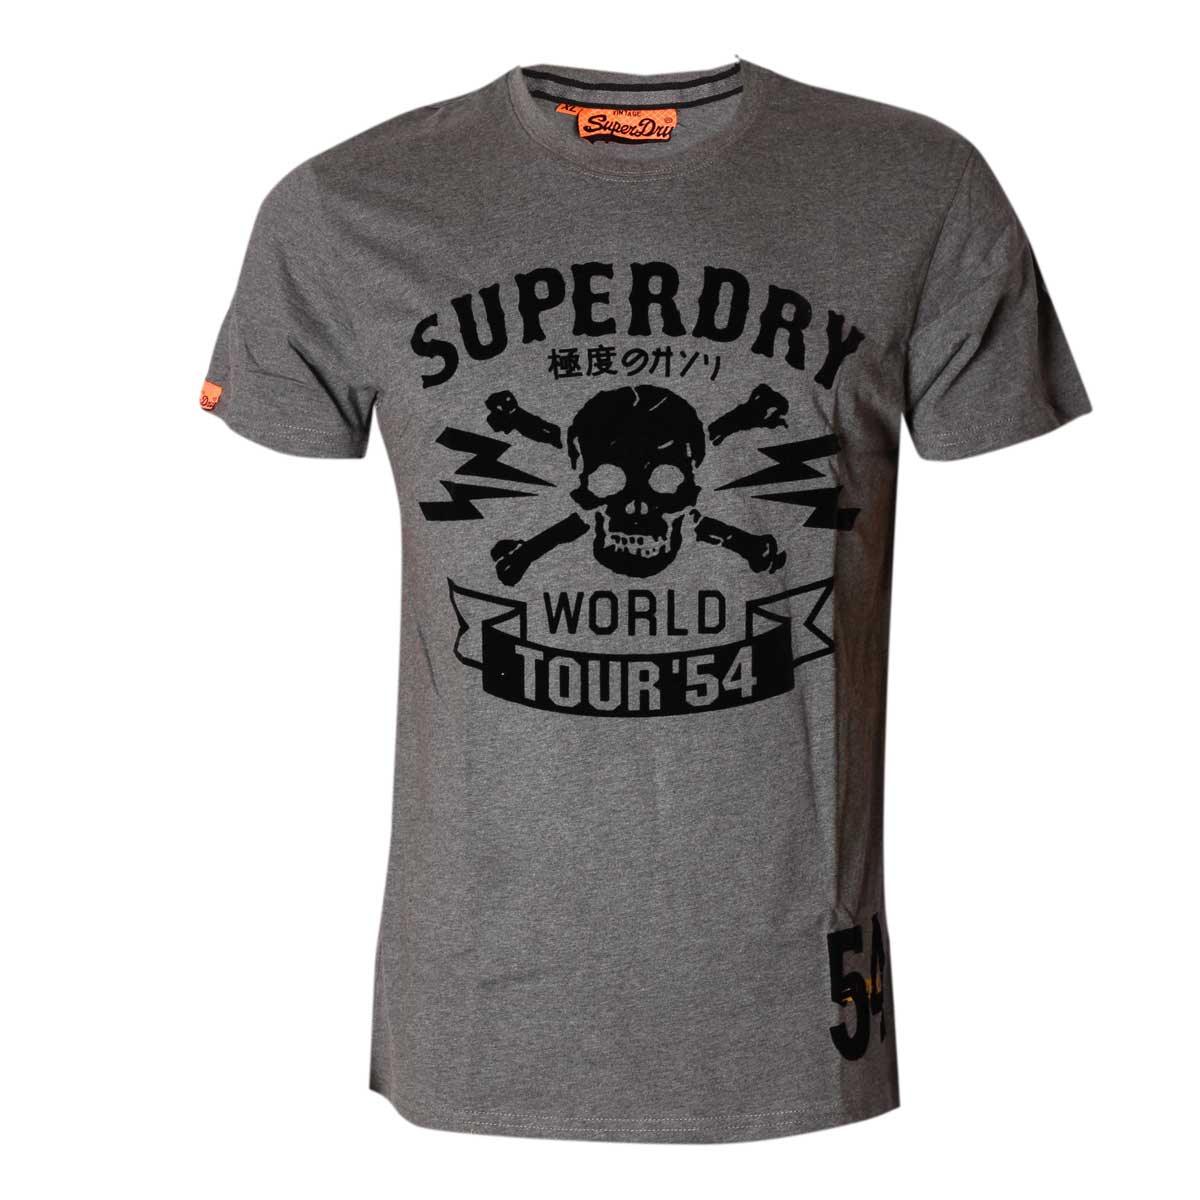 SuperDry World tour 54 T shirt Ash - Obeezi.com